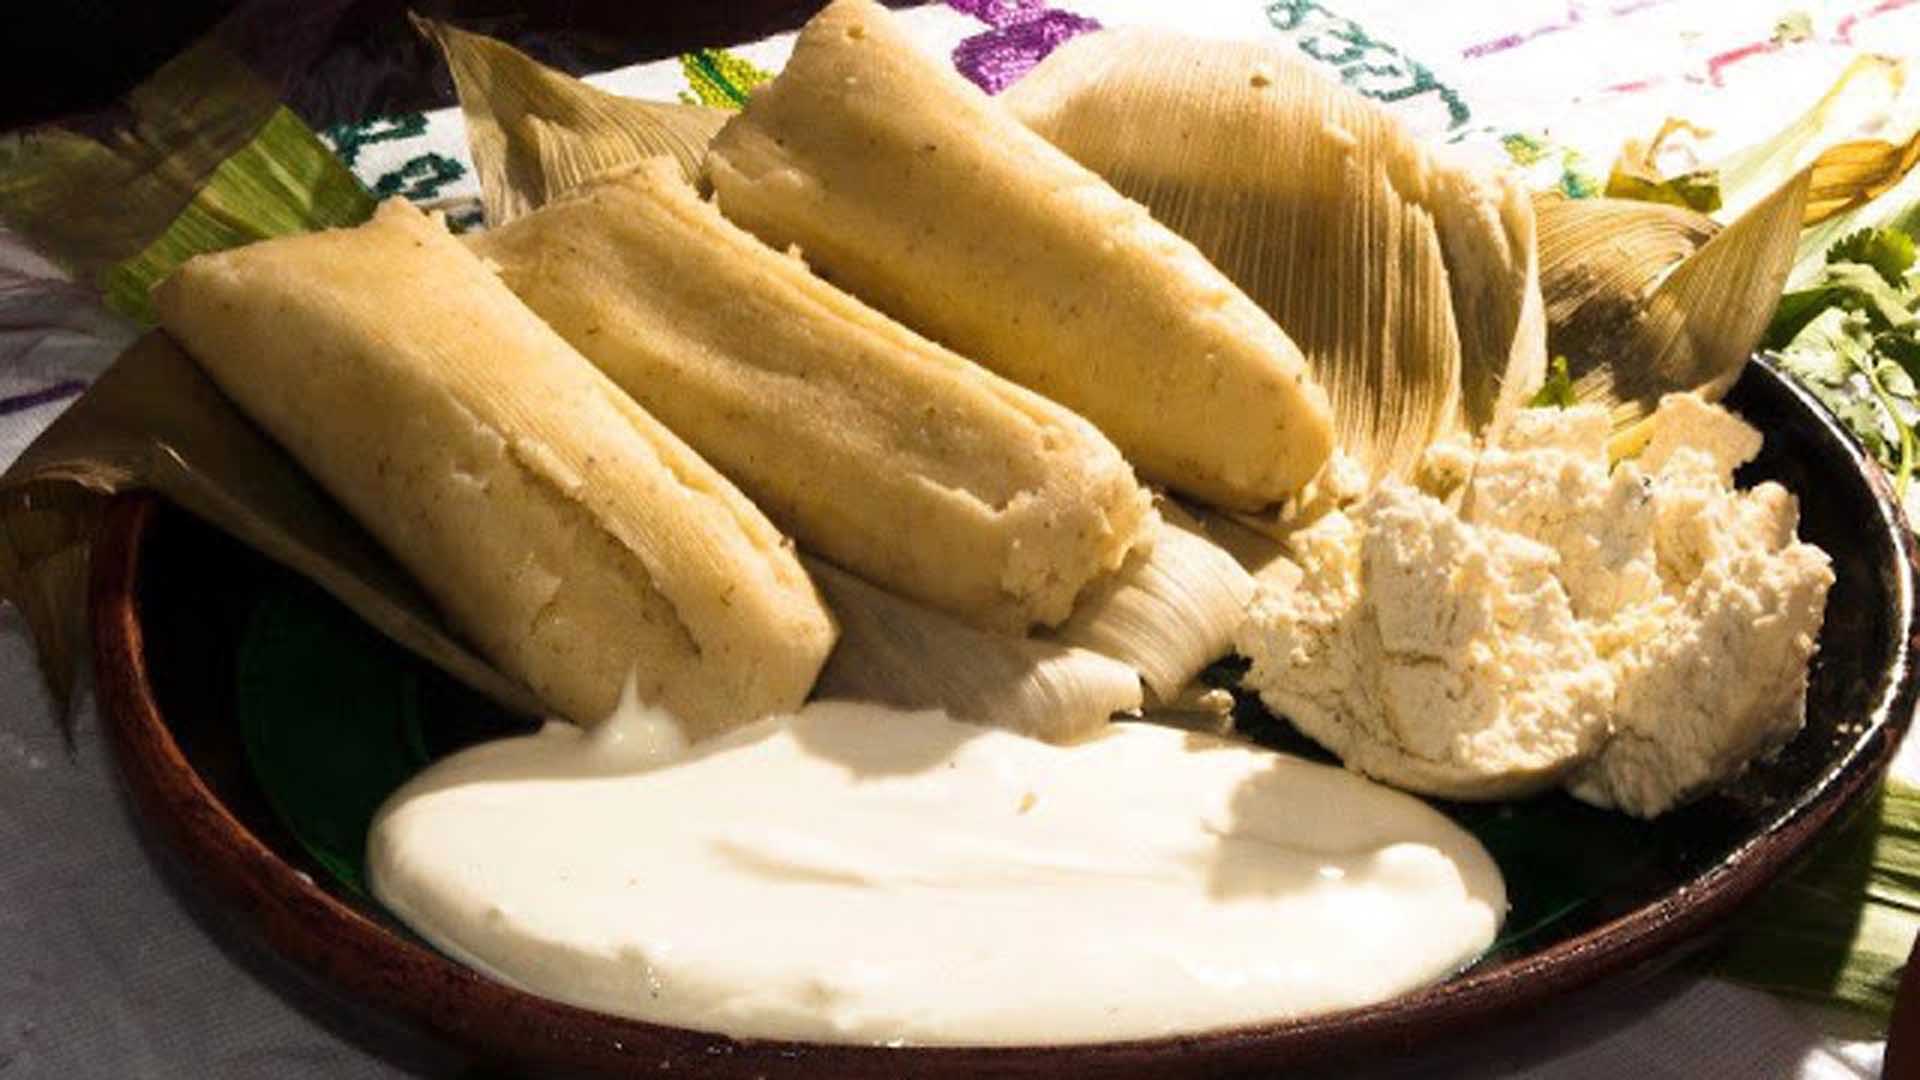 24 platillos deliciosos que tienes que probar en Michoacán - Matador Español